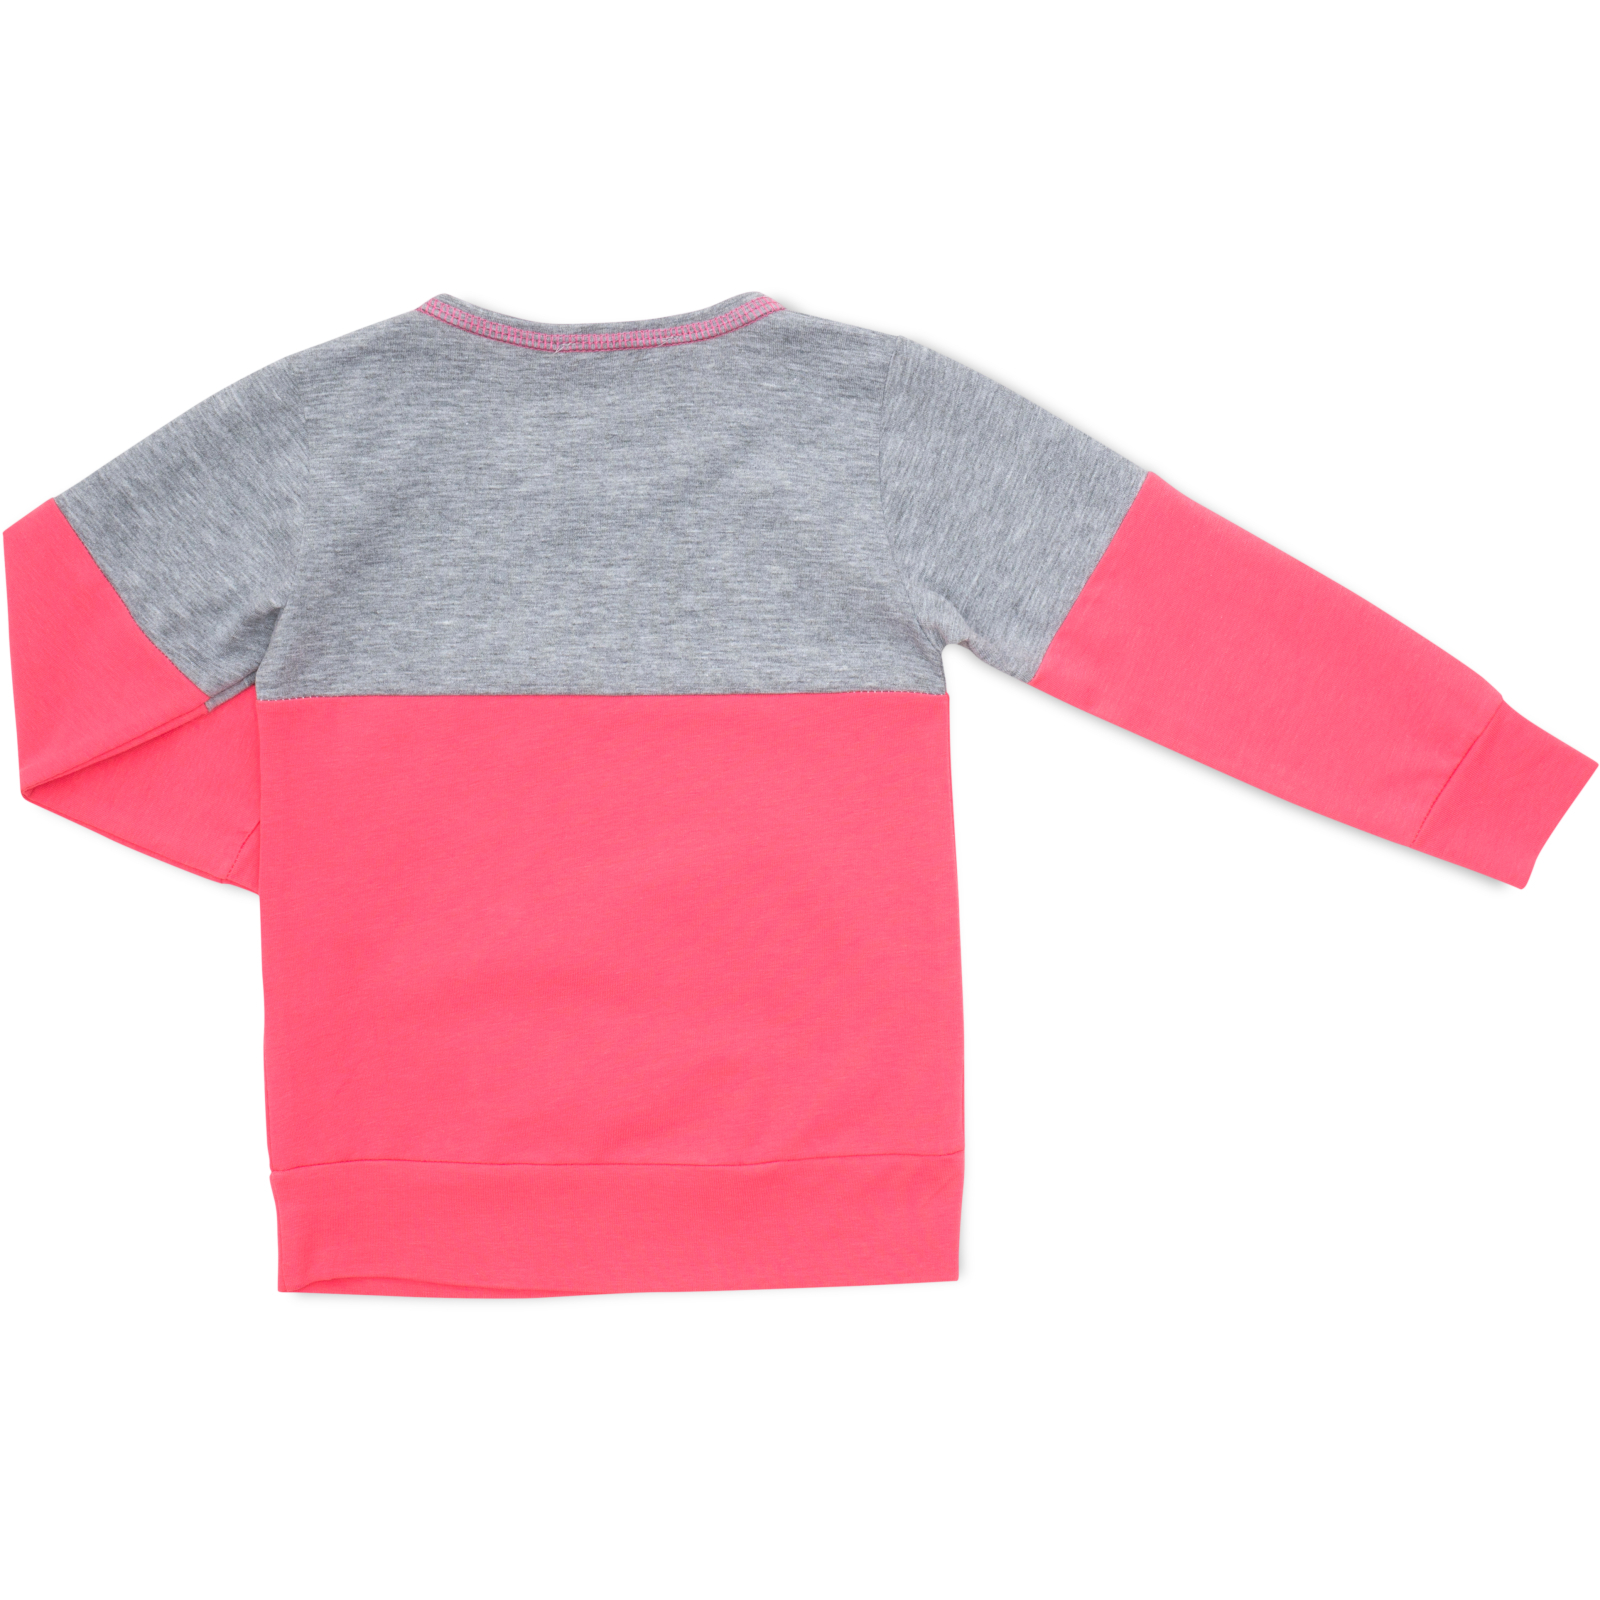 Пижама Matilda со звездочками (7167-92G-pink) изображение 5